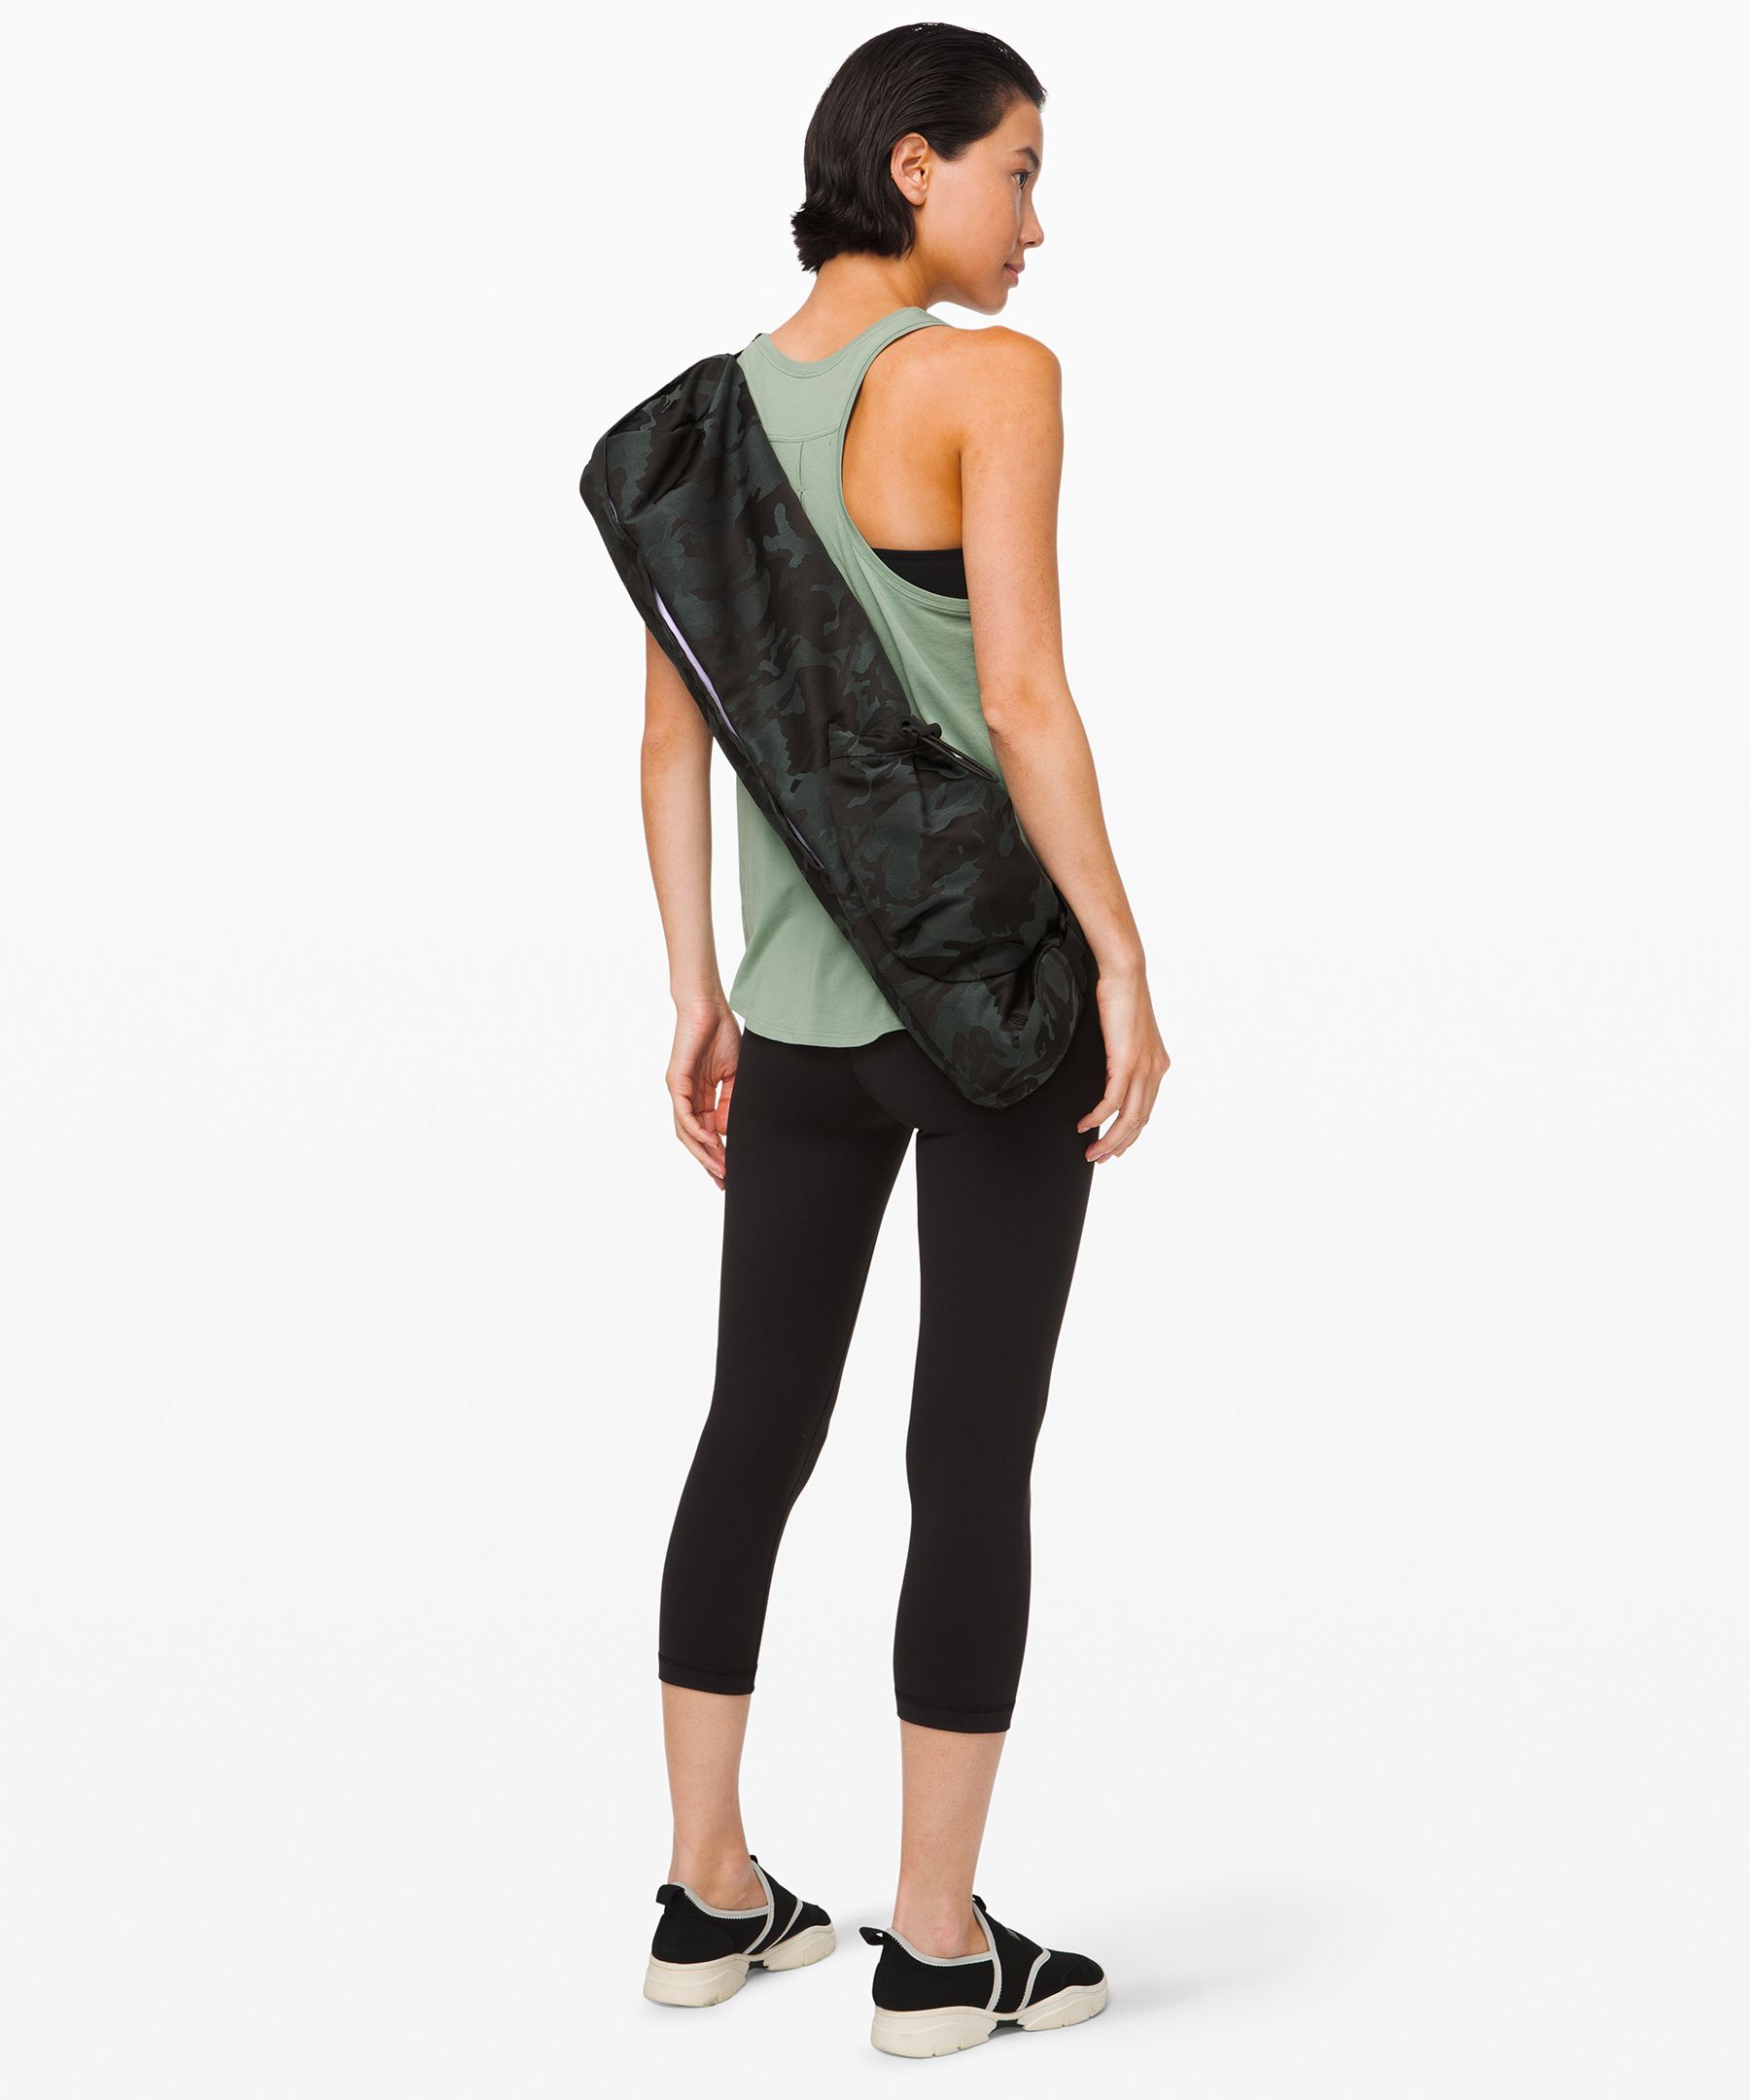 The Yoga Mat Bag